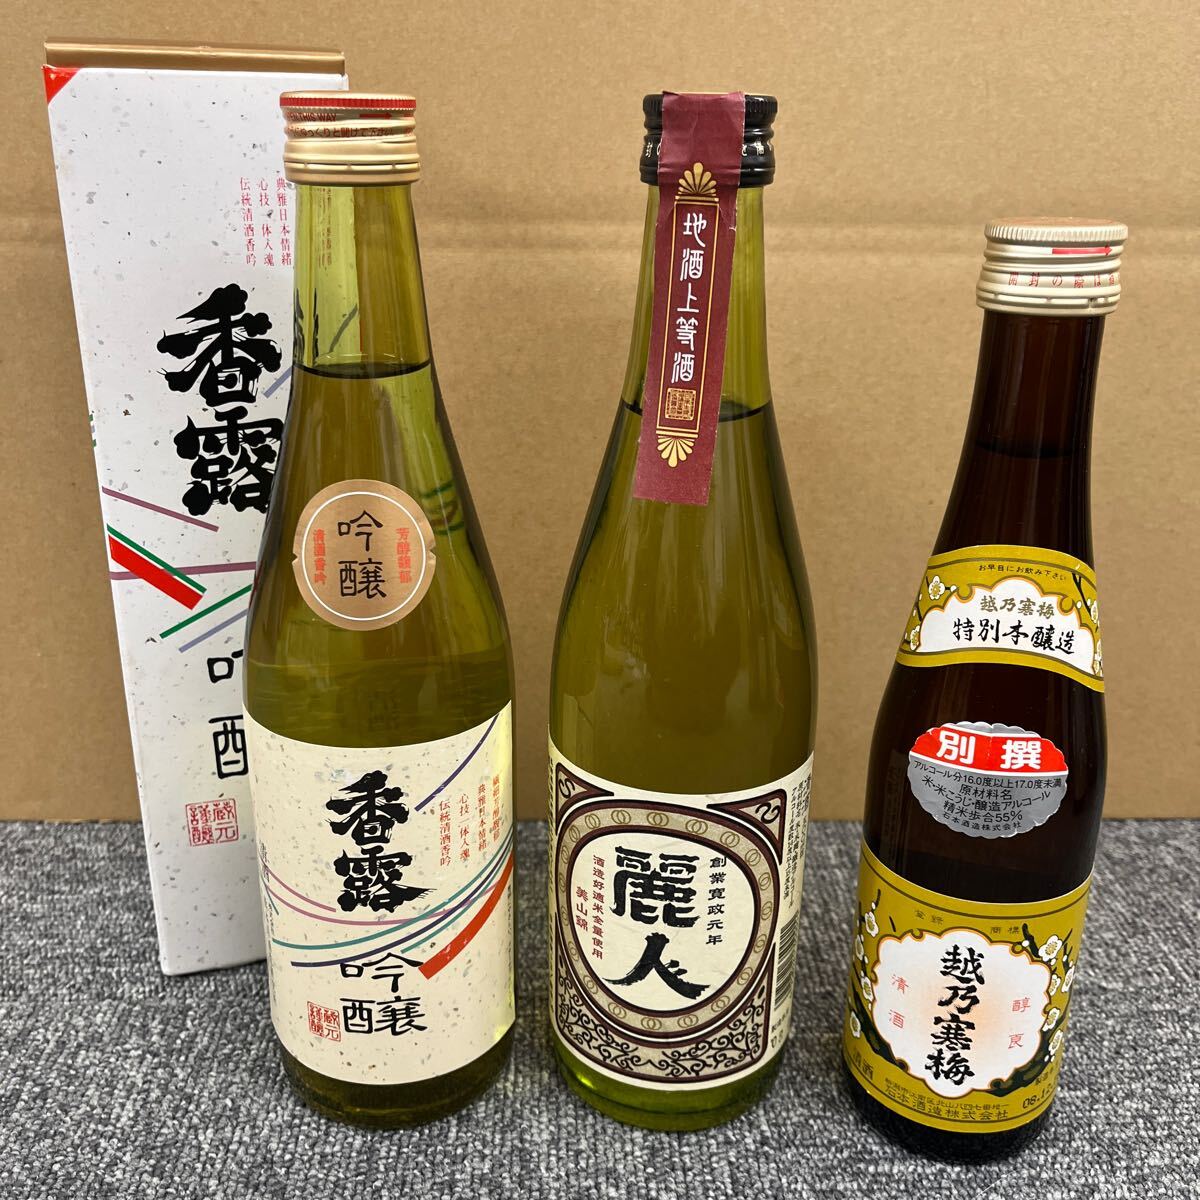 147. * не . штекер * японкое рисовое вино (sake) 1 2 шт суммировать сосна бамбук слива /... длина . sake .. журавль /.. холод слива / красота человек /.. белый слива / др. большой сакэ гиндзё Kiyoshi sake старый sake 